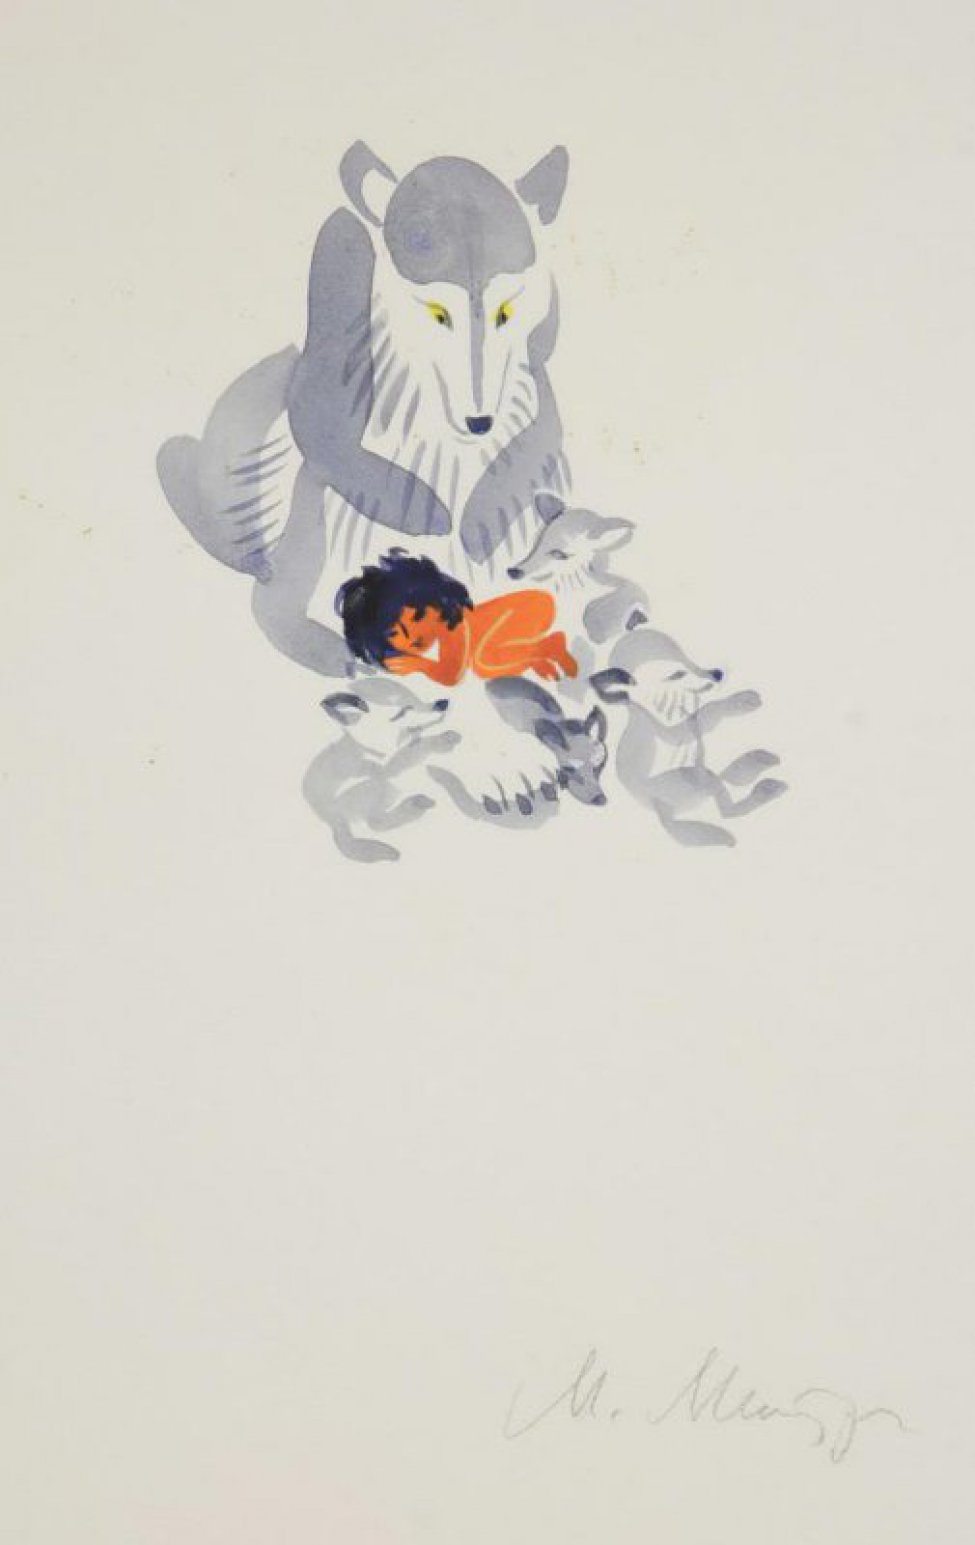 В центре композиции изображена сидящая  волчица, и лежащие около нее Маугли, четыре волчонка.